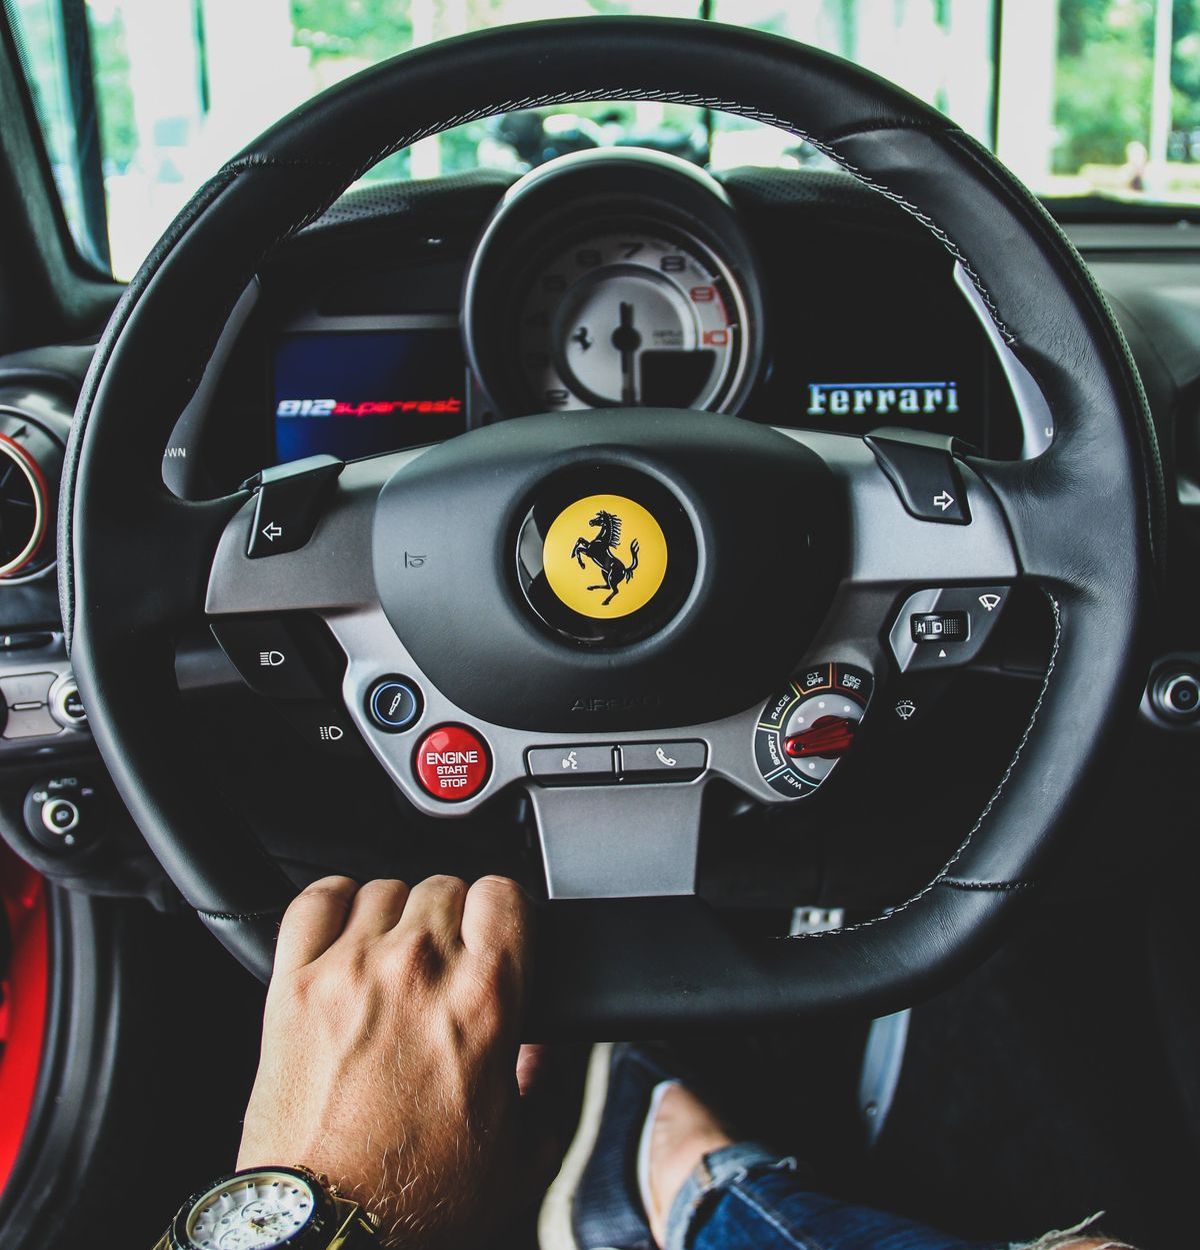 Foto: Die besten Argumente für einen Ferrari.